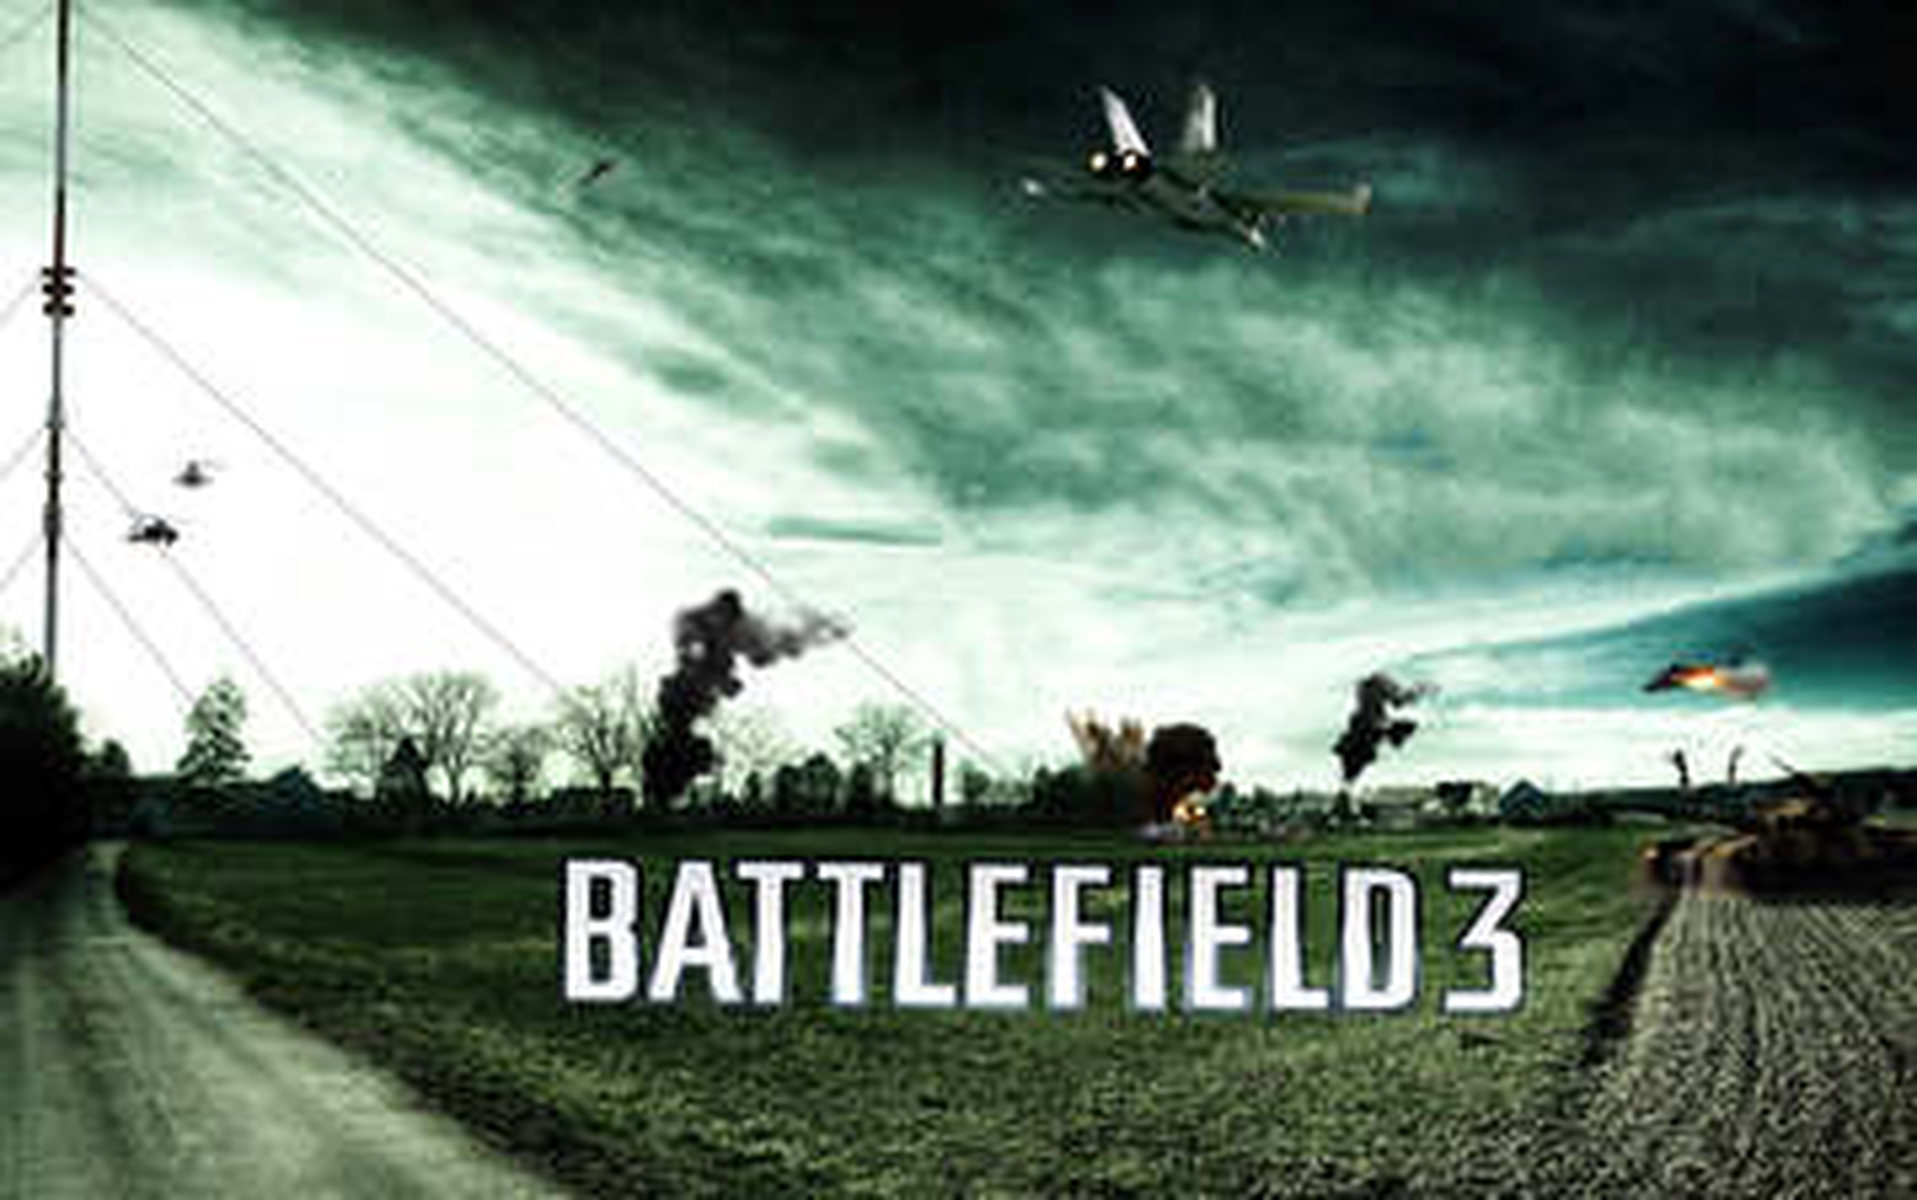 

Качественные HD заставки игры Battlefield 1600x1200

